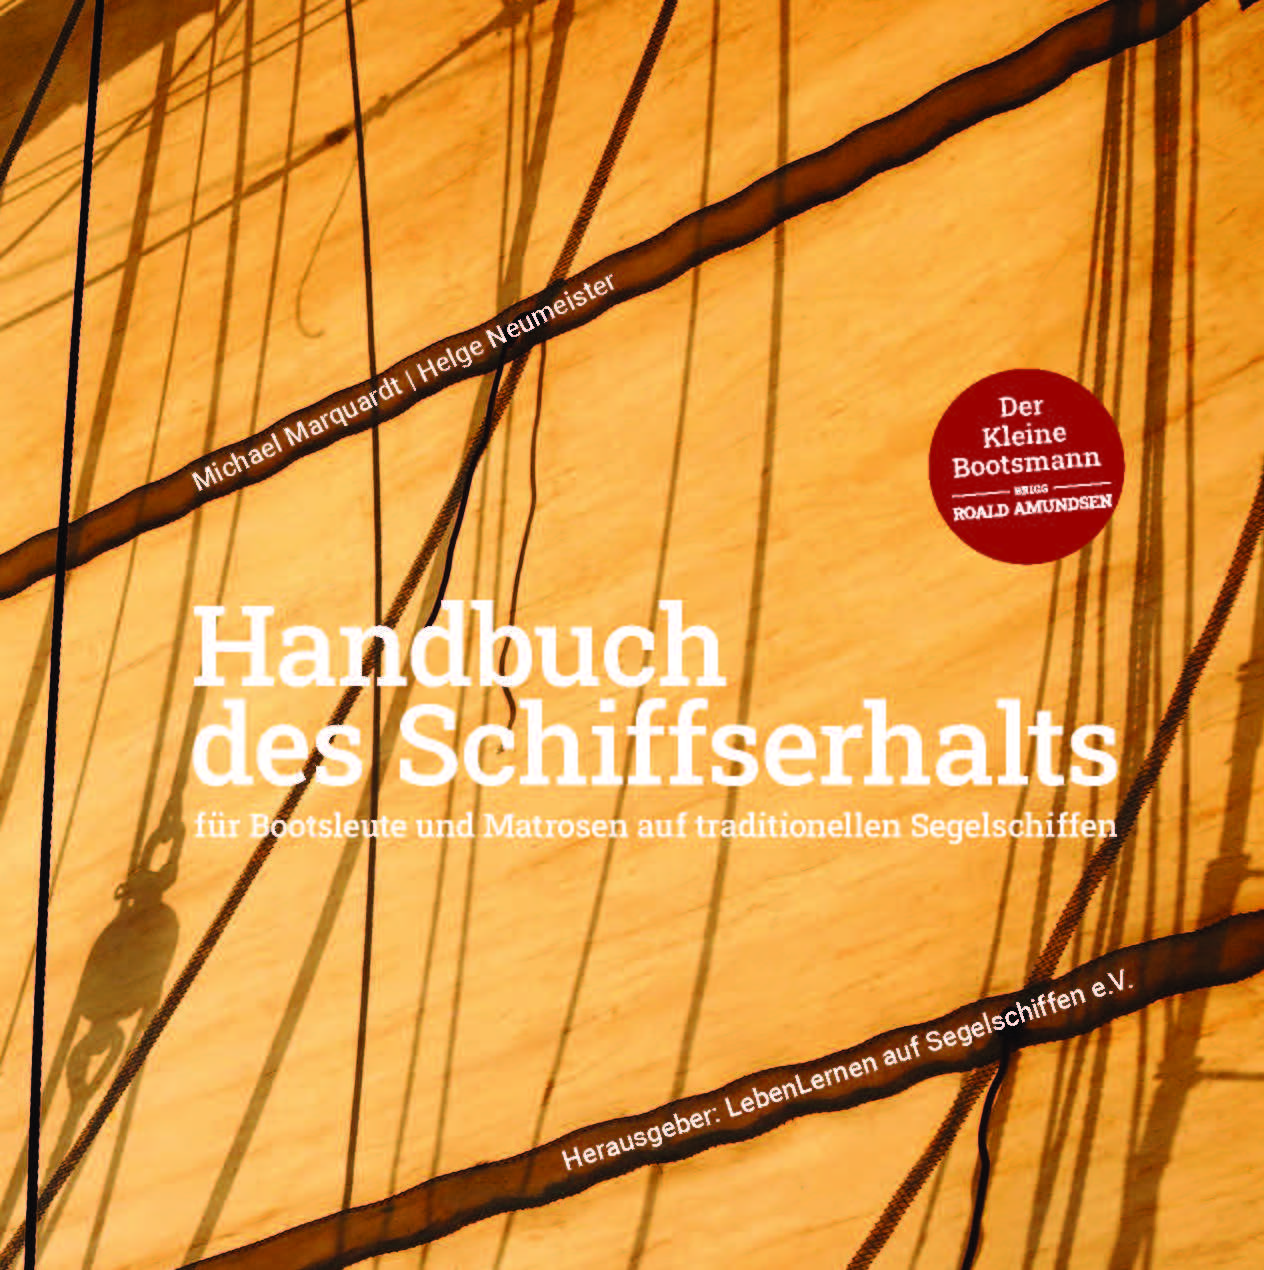 HANDBUCH DES SCHIFFSERHALTS / M. Marquardt, H. Neumeister